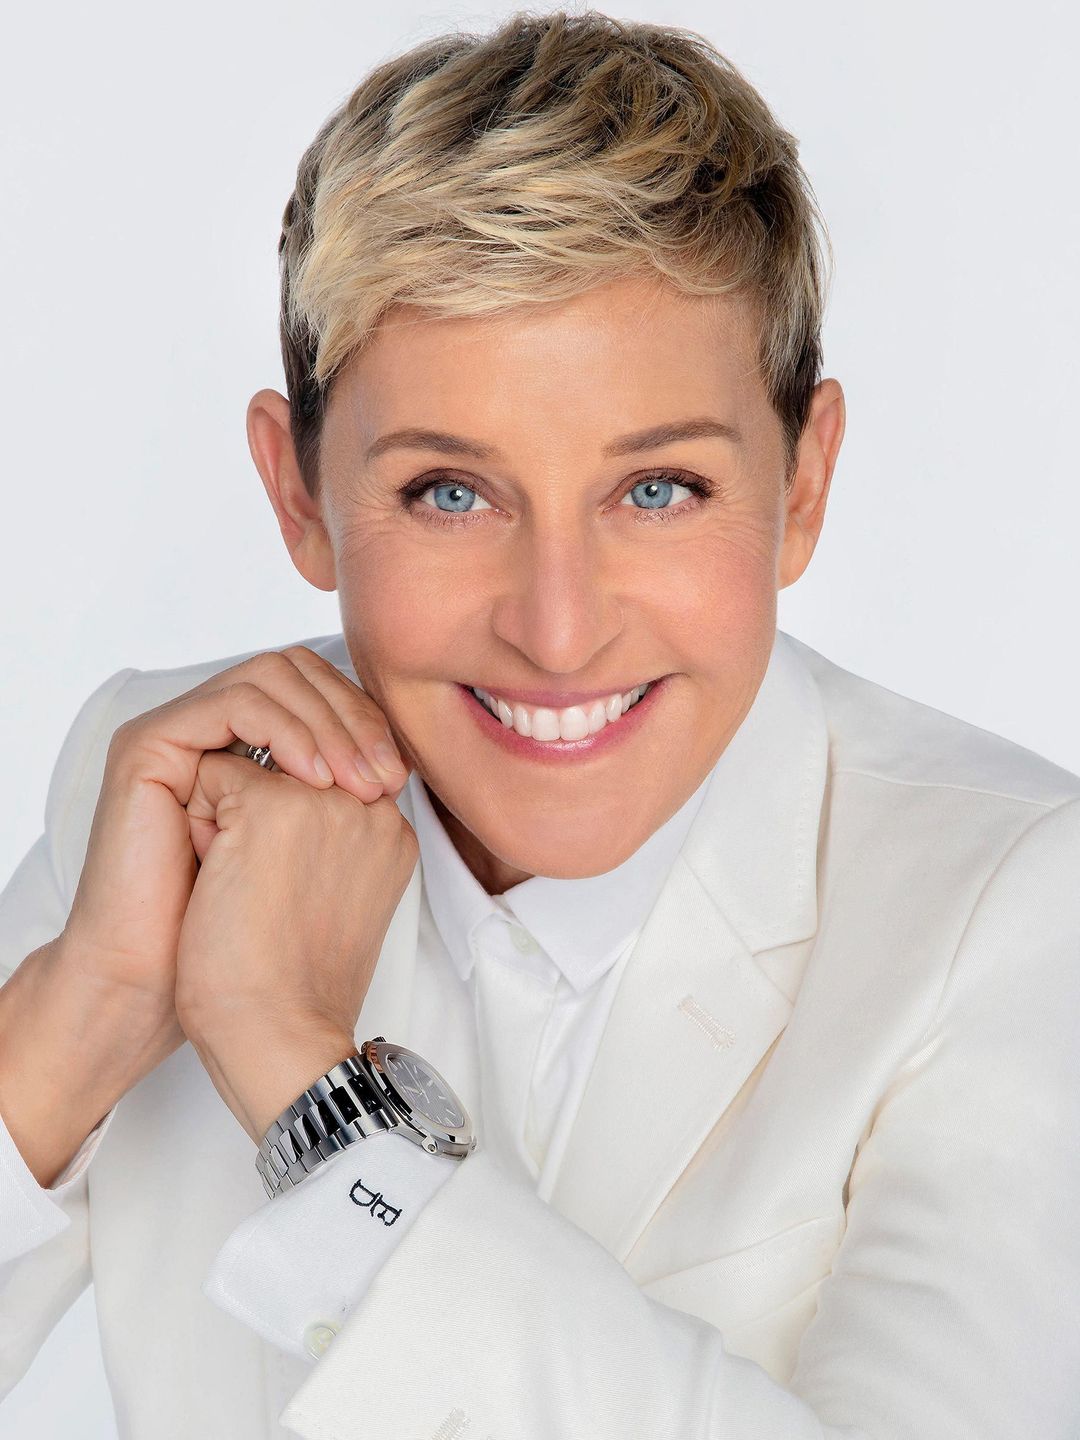 Ellen DeGeneres young age